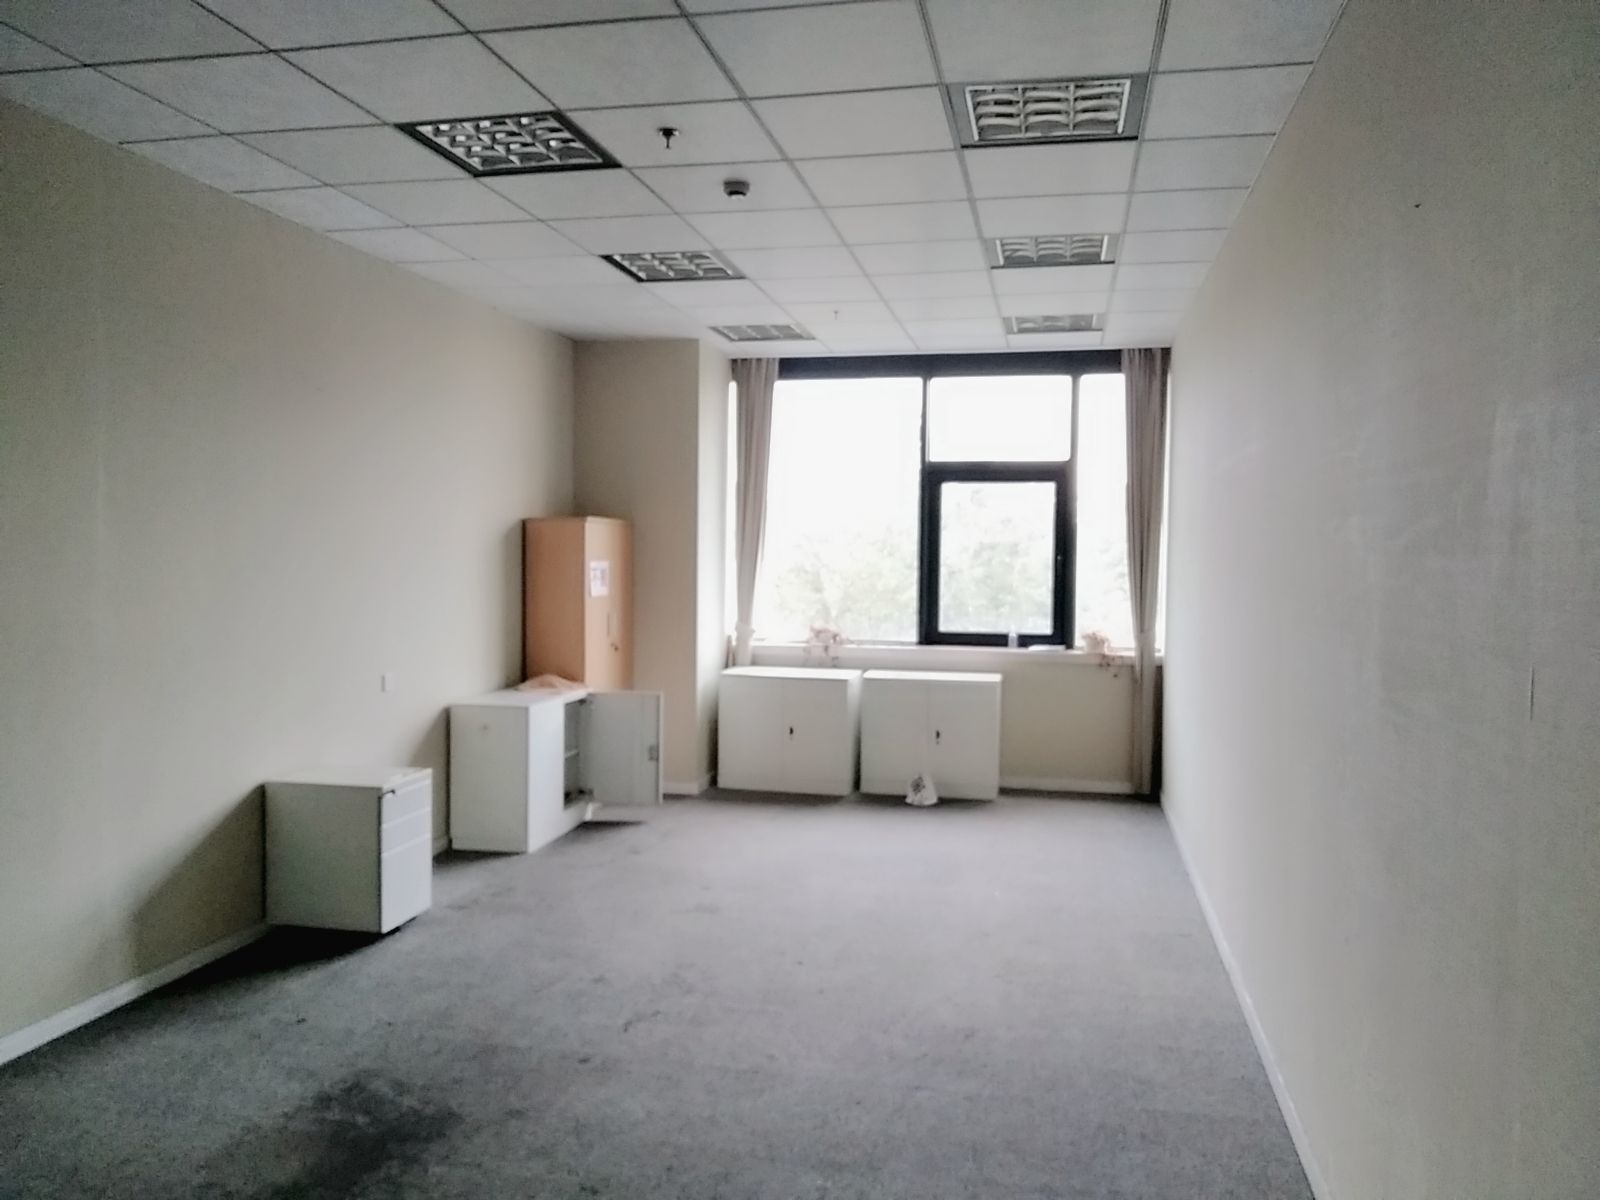 飞马旅鼎信园区530平米办公室出租-租金价格3.55元/m²/天